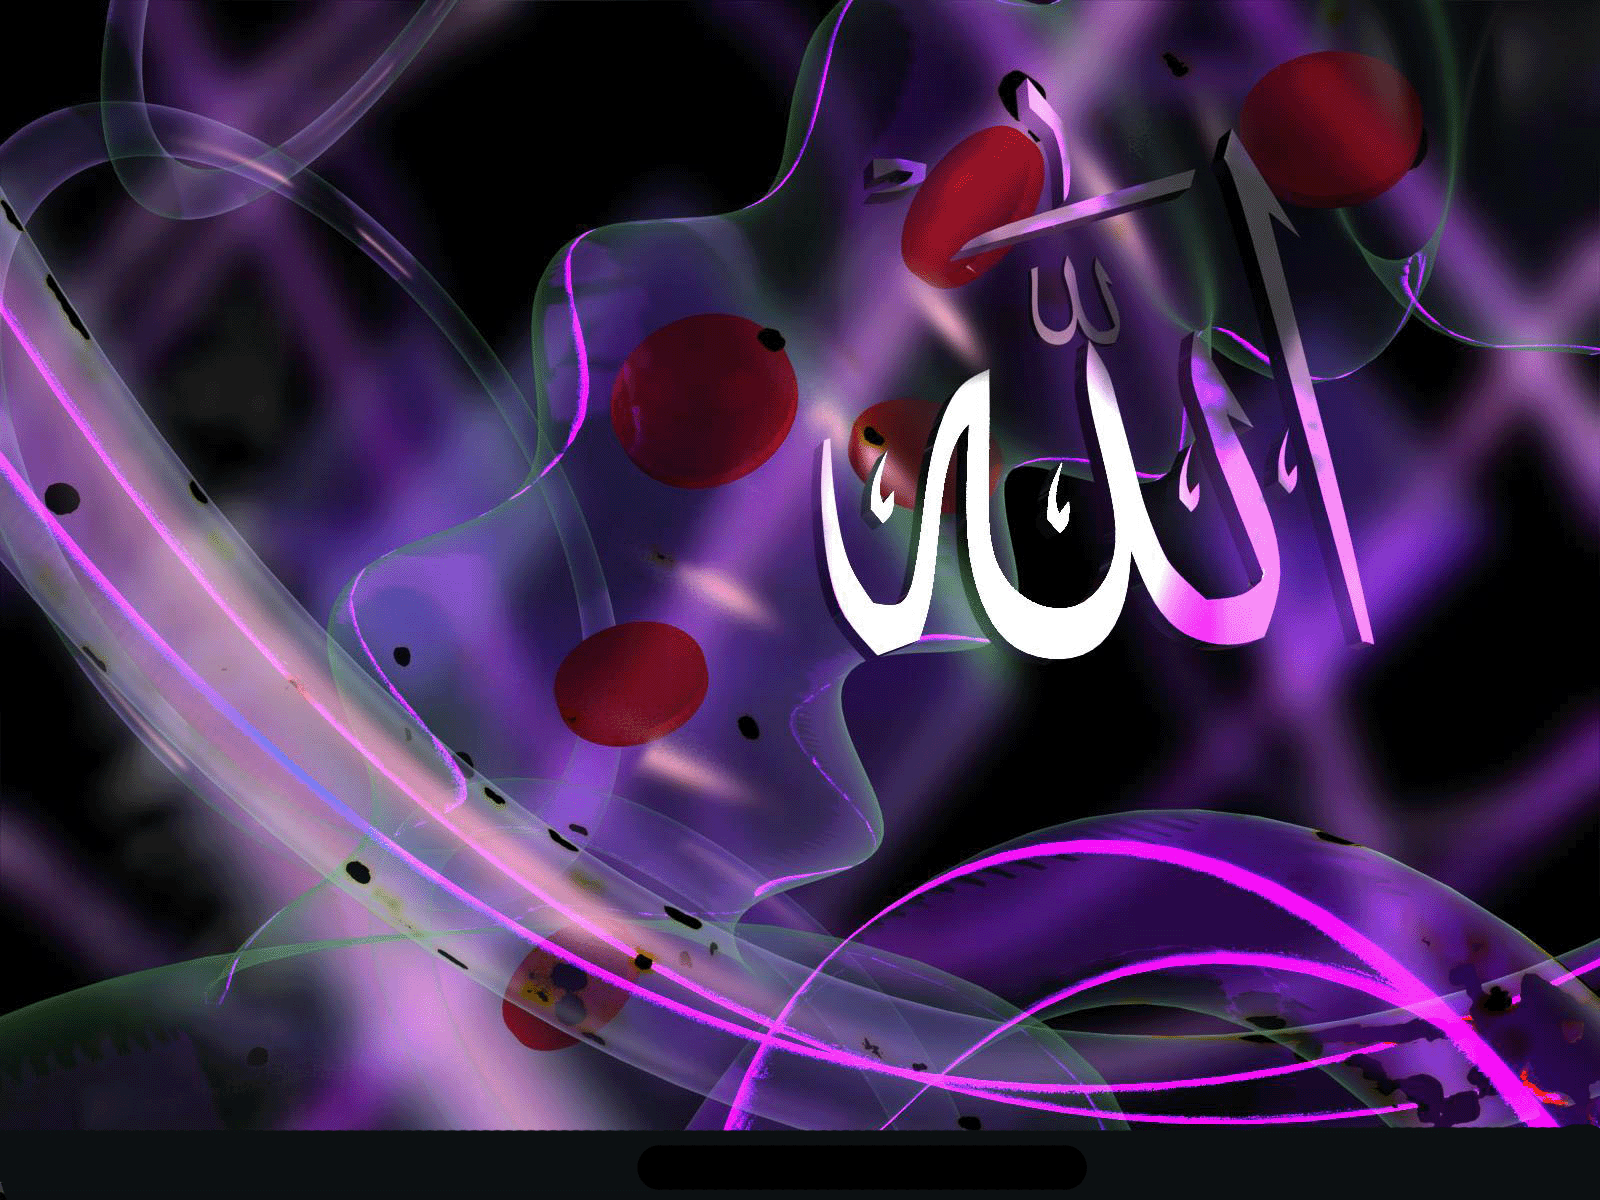 Allah Name Wallpapers 2015 - Wallpaper Cave